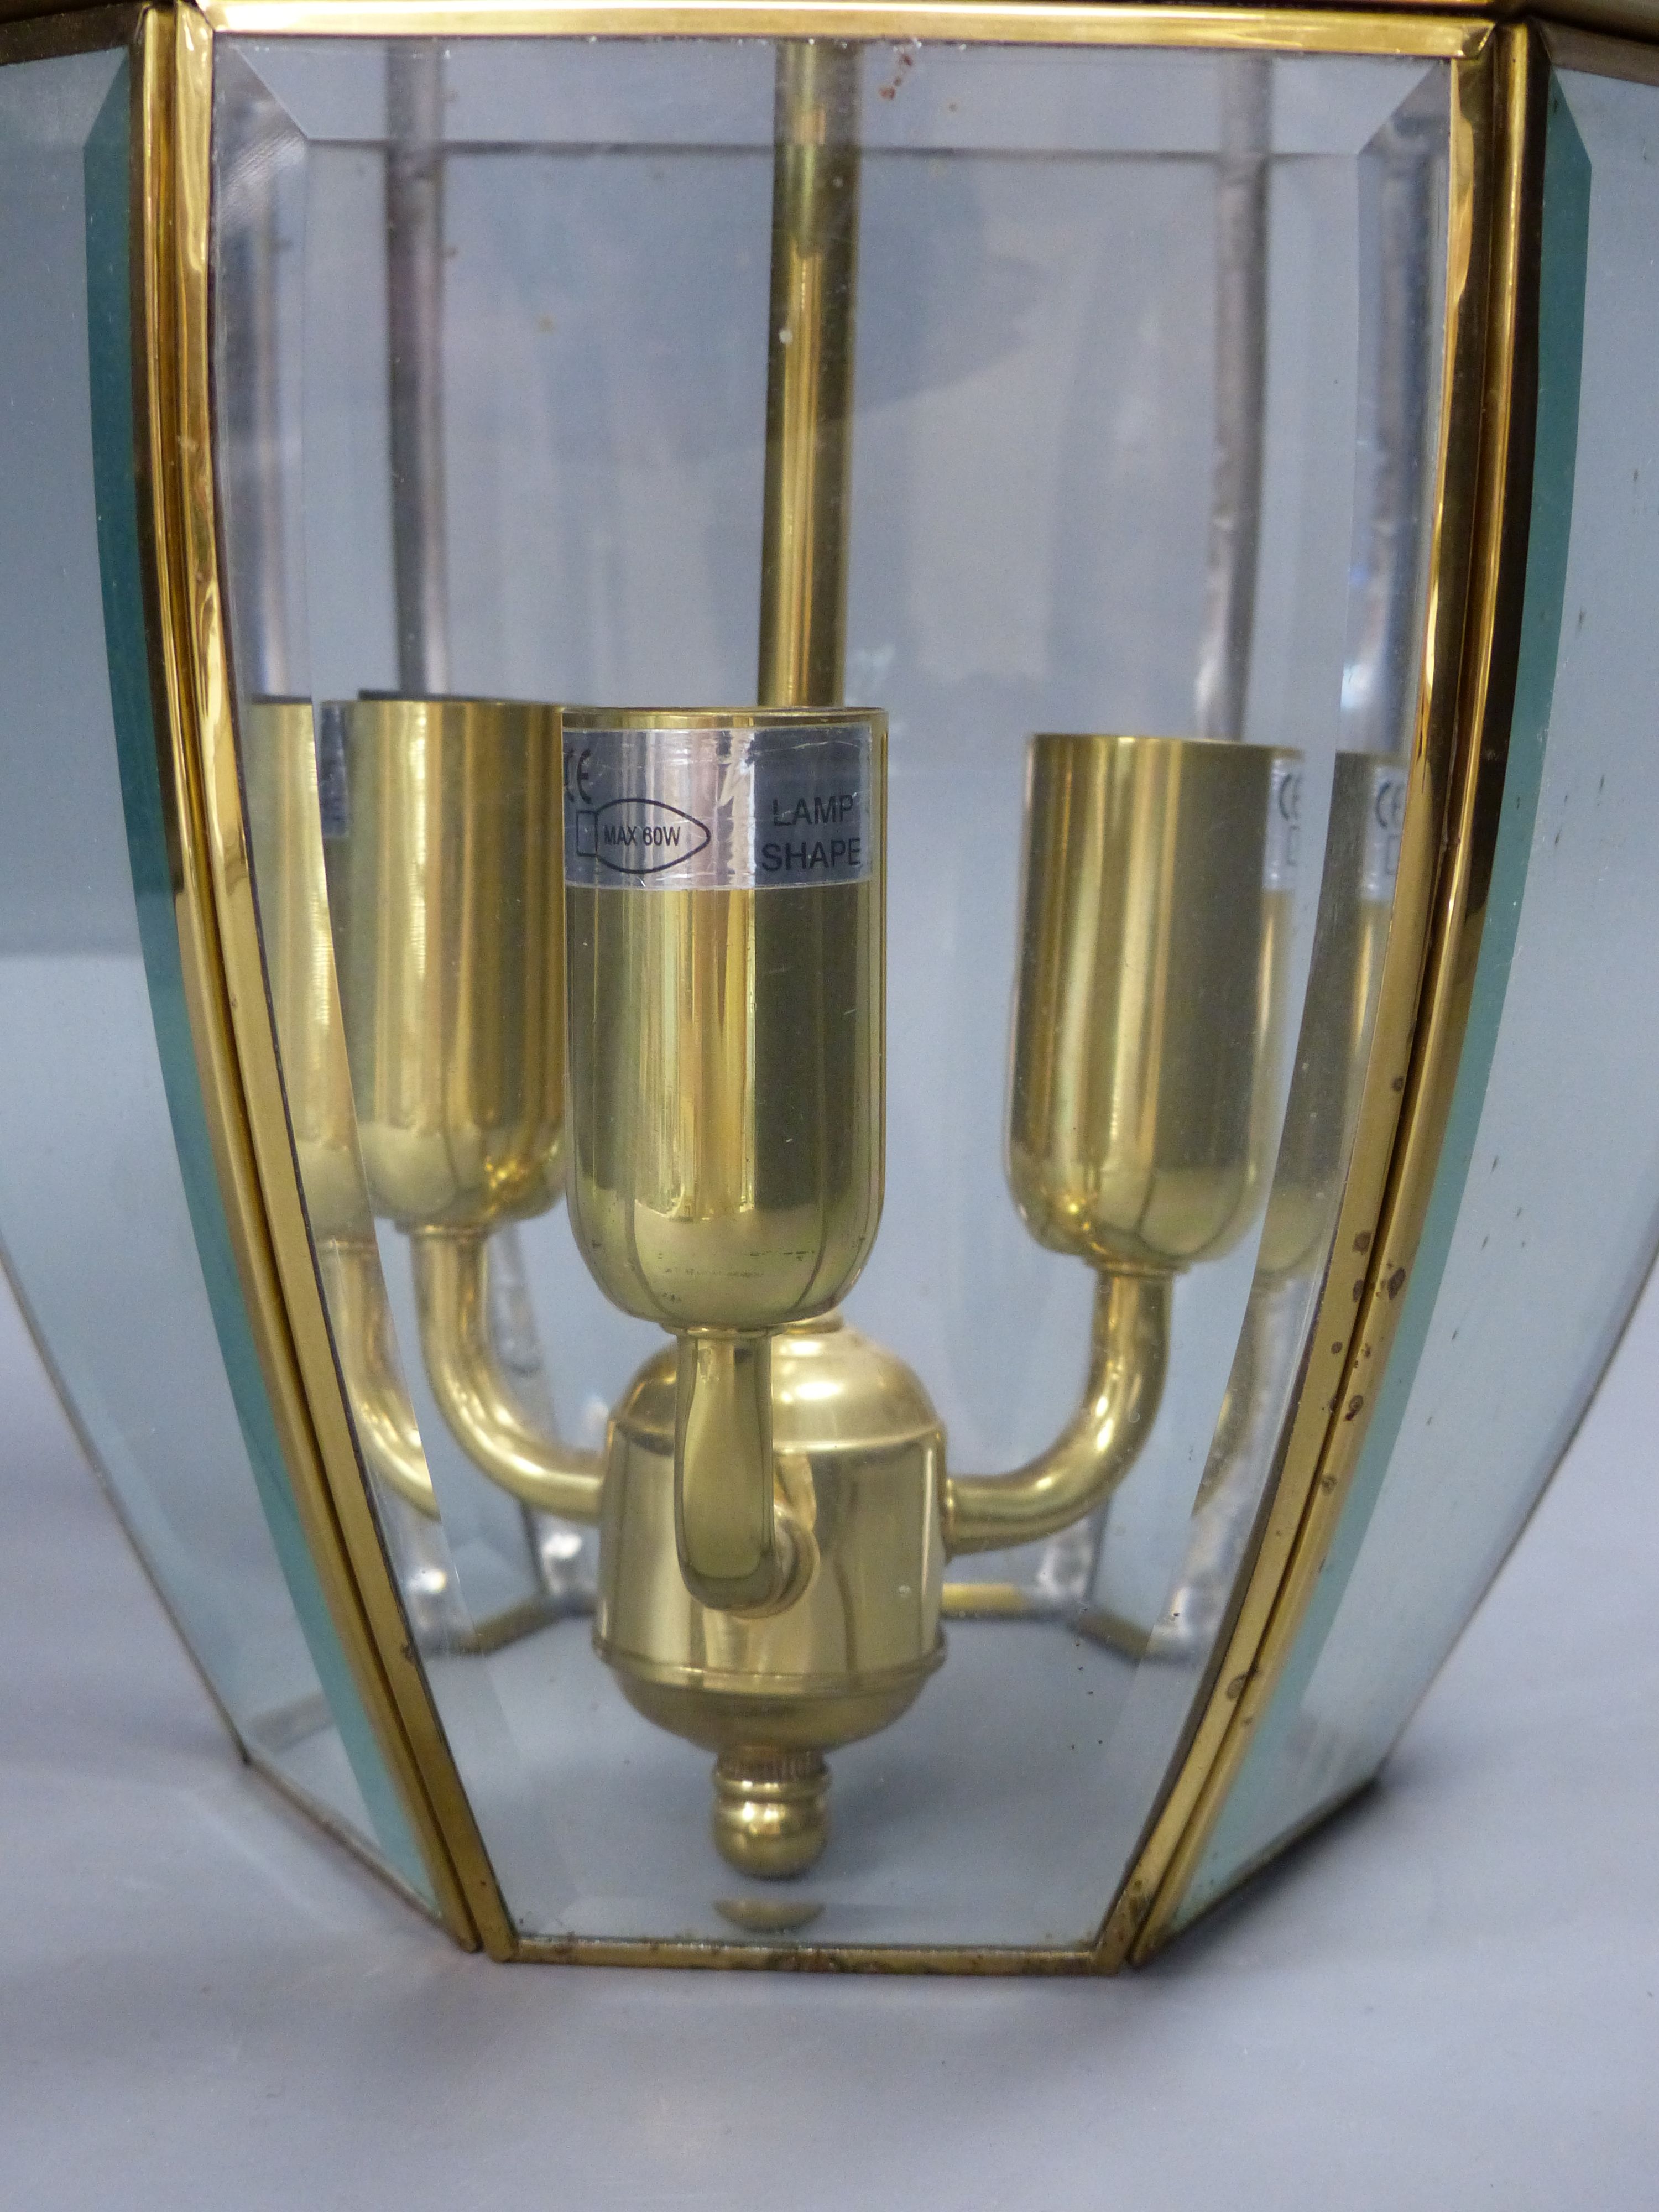 A hexagonal gilt metal and glass hall lantern